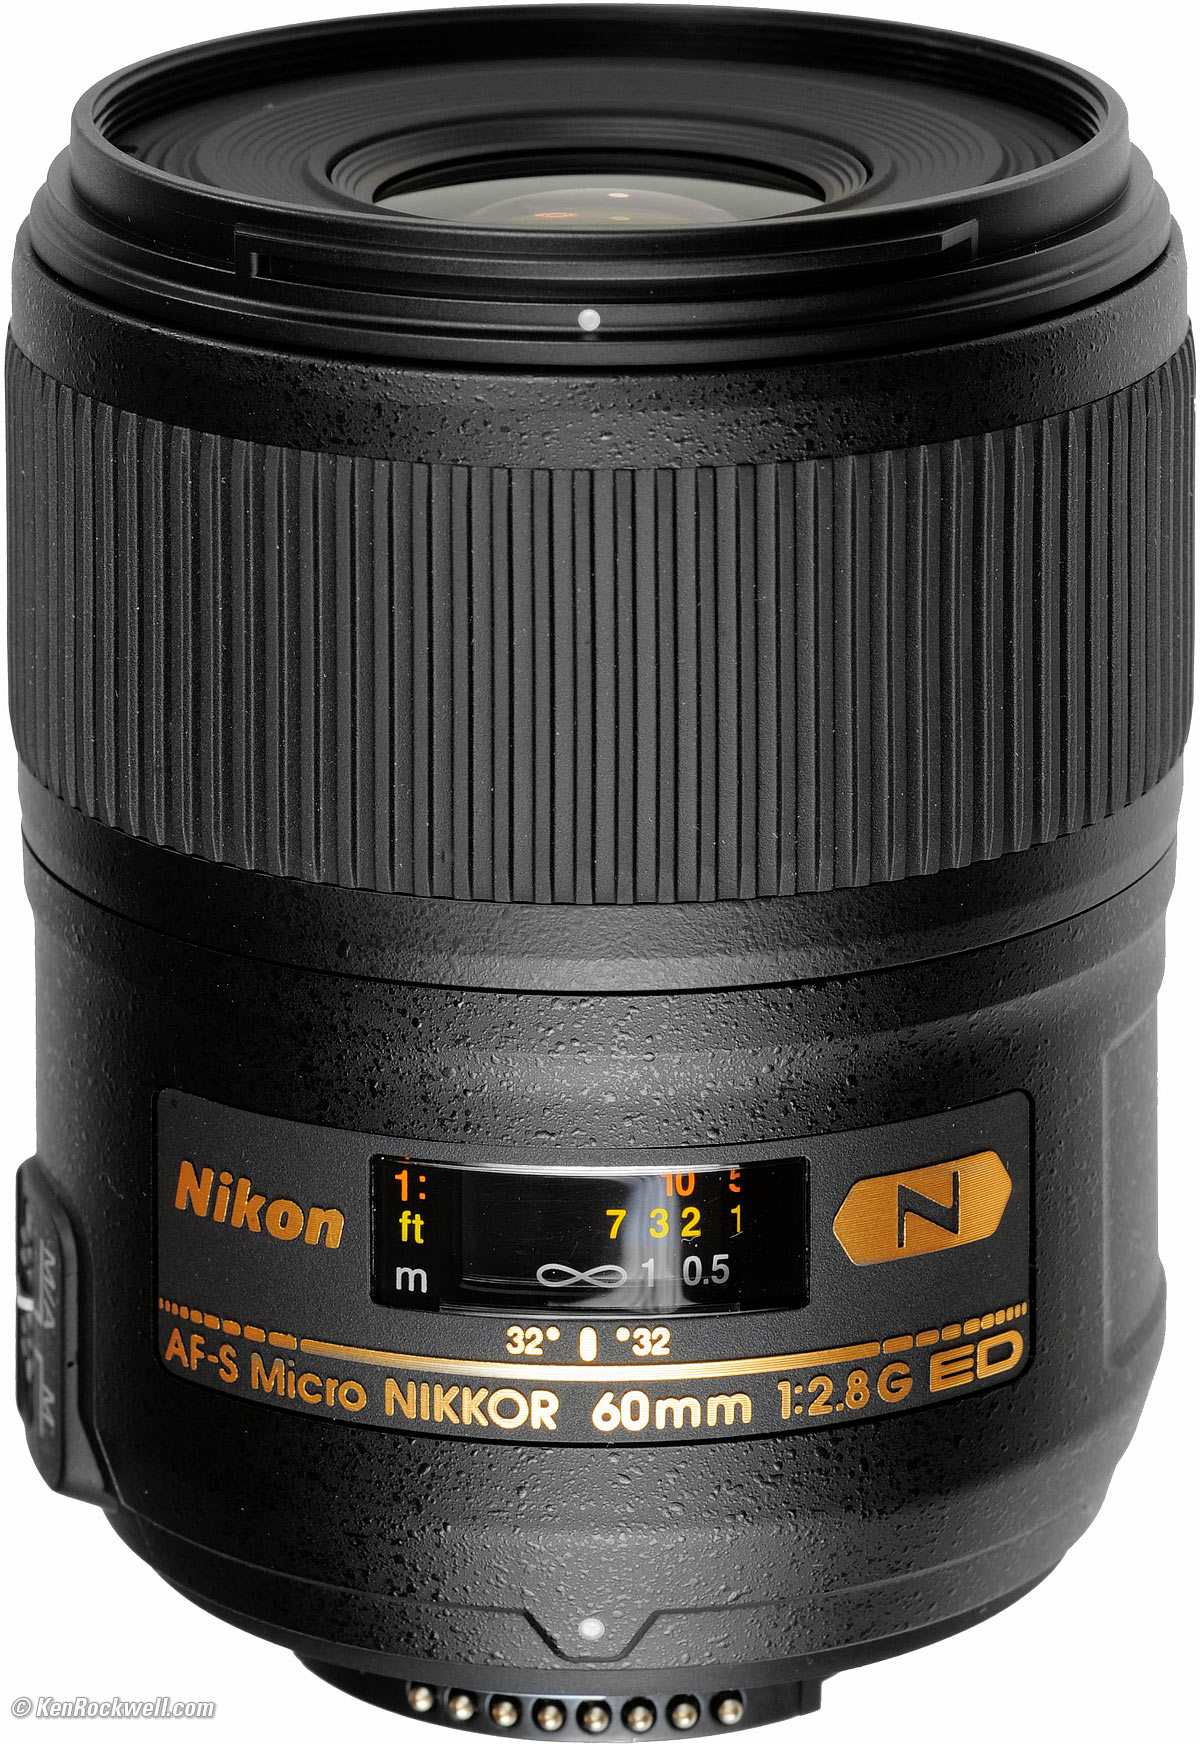 このレンズの特徴としてはNikon  AF-S Micro NIKKOR 60mm F2.8 G ED